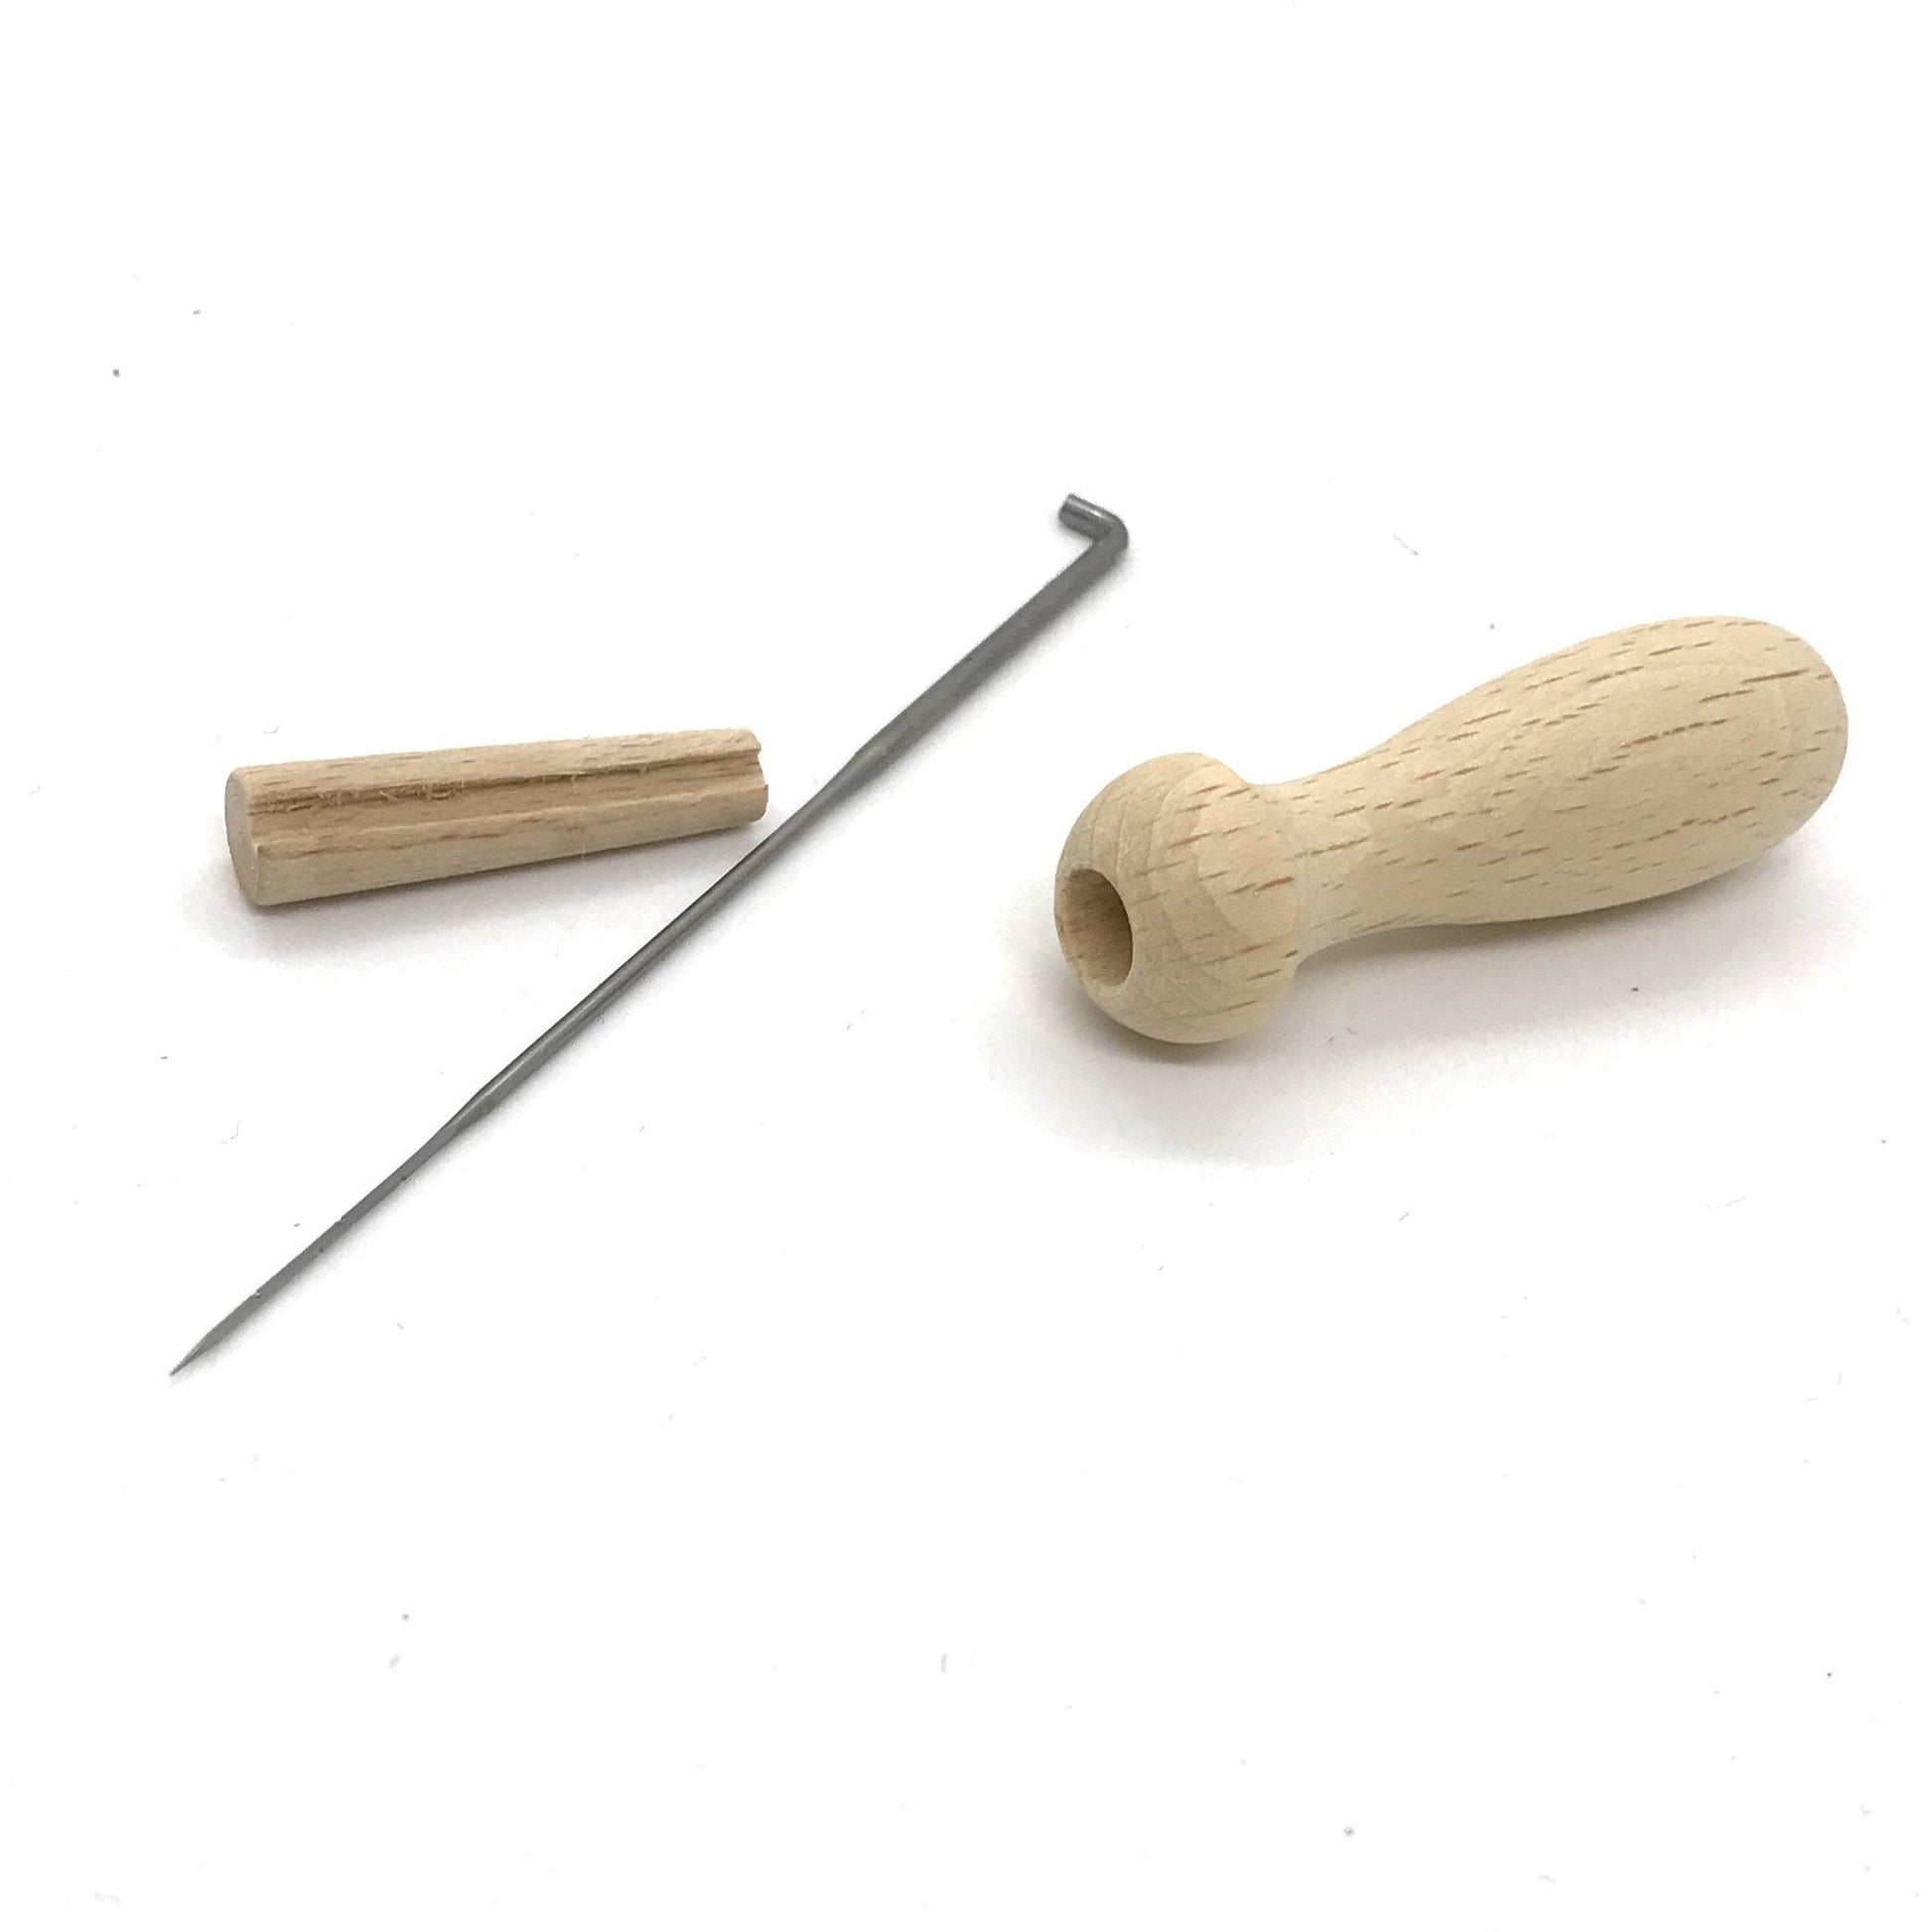 Wooden Felting Needle Holder - at Wabi Sabi